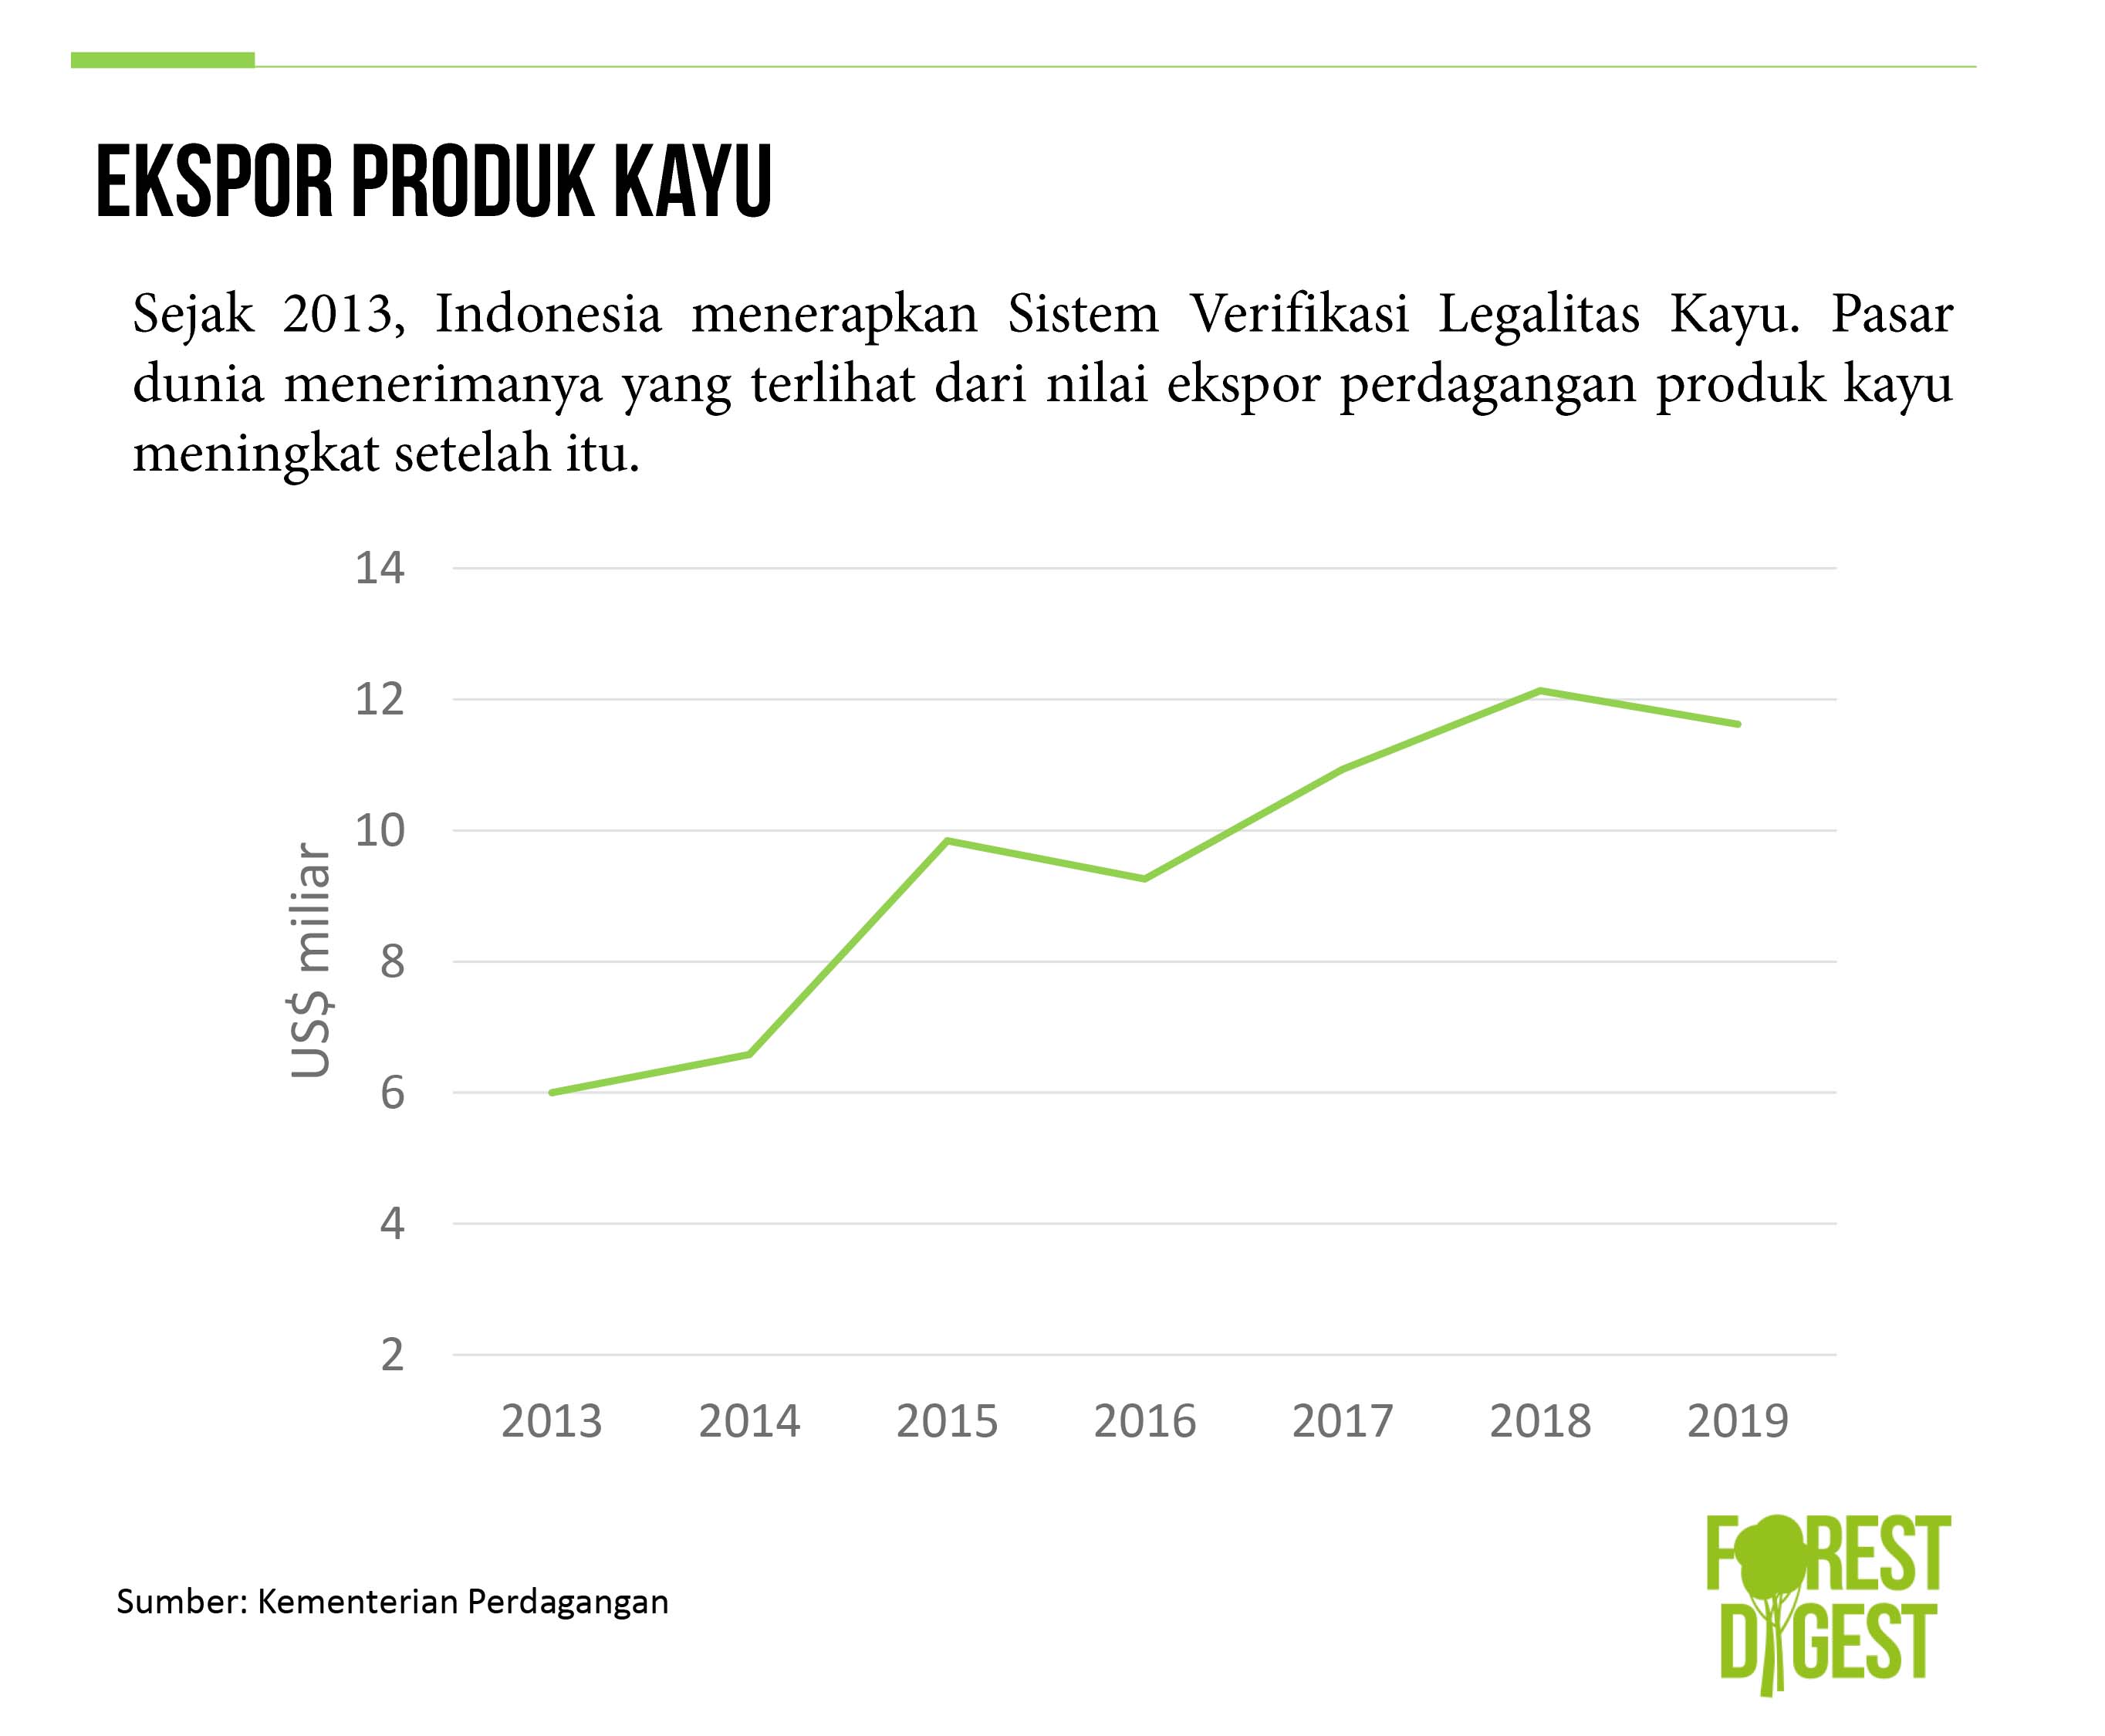 Nilai ekspor perdagangan kayu Indonesia